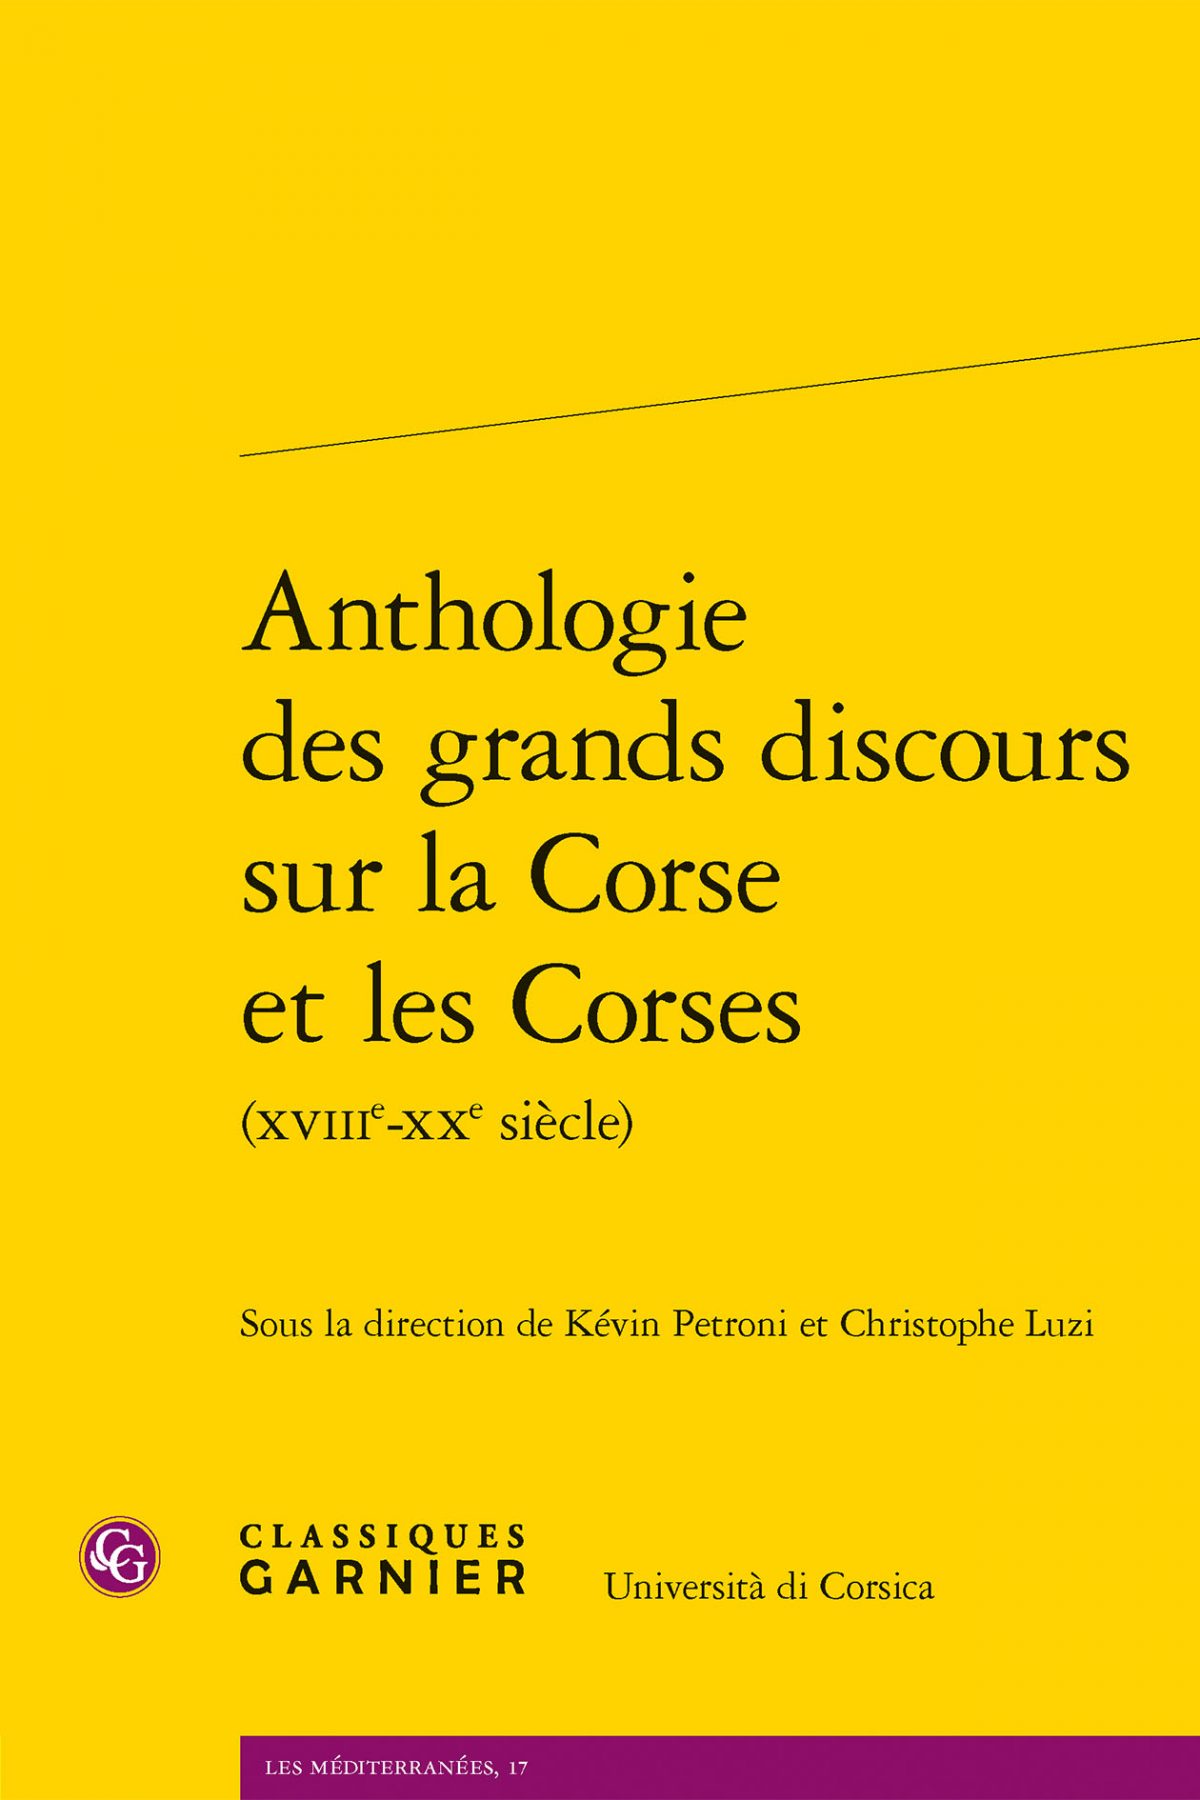 Anthologie des grands discours sur la Corse et les Corses, Classiques Garnier, 2023.